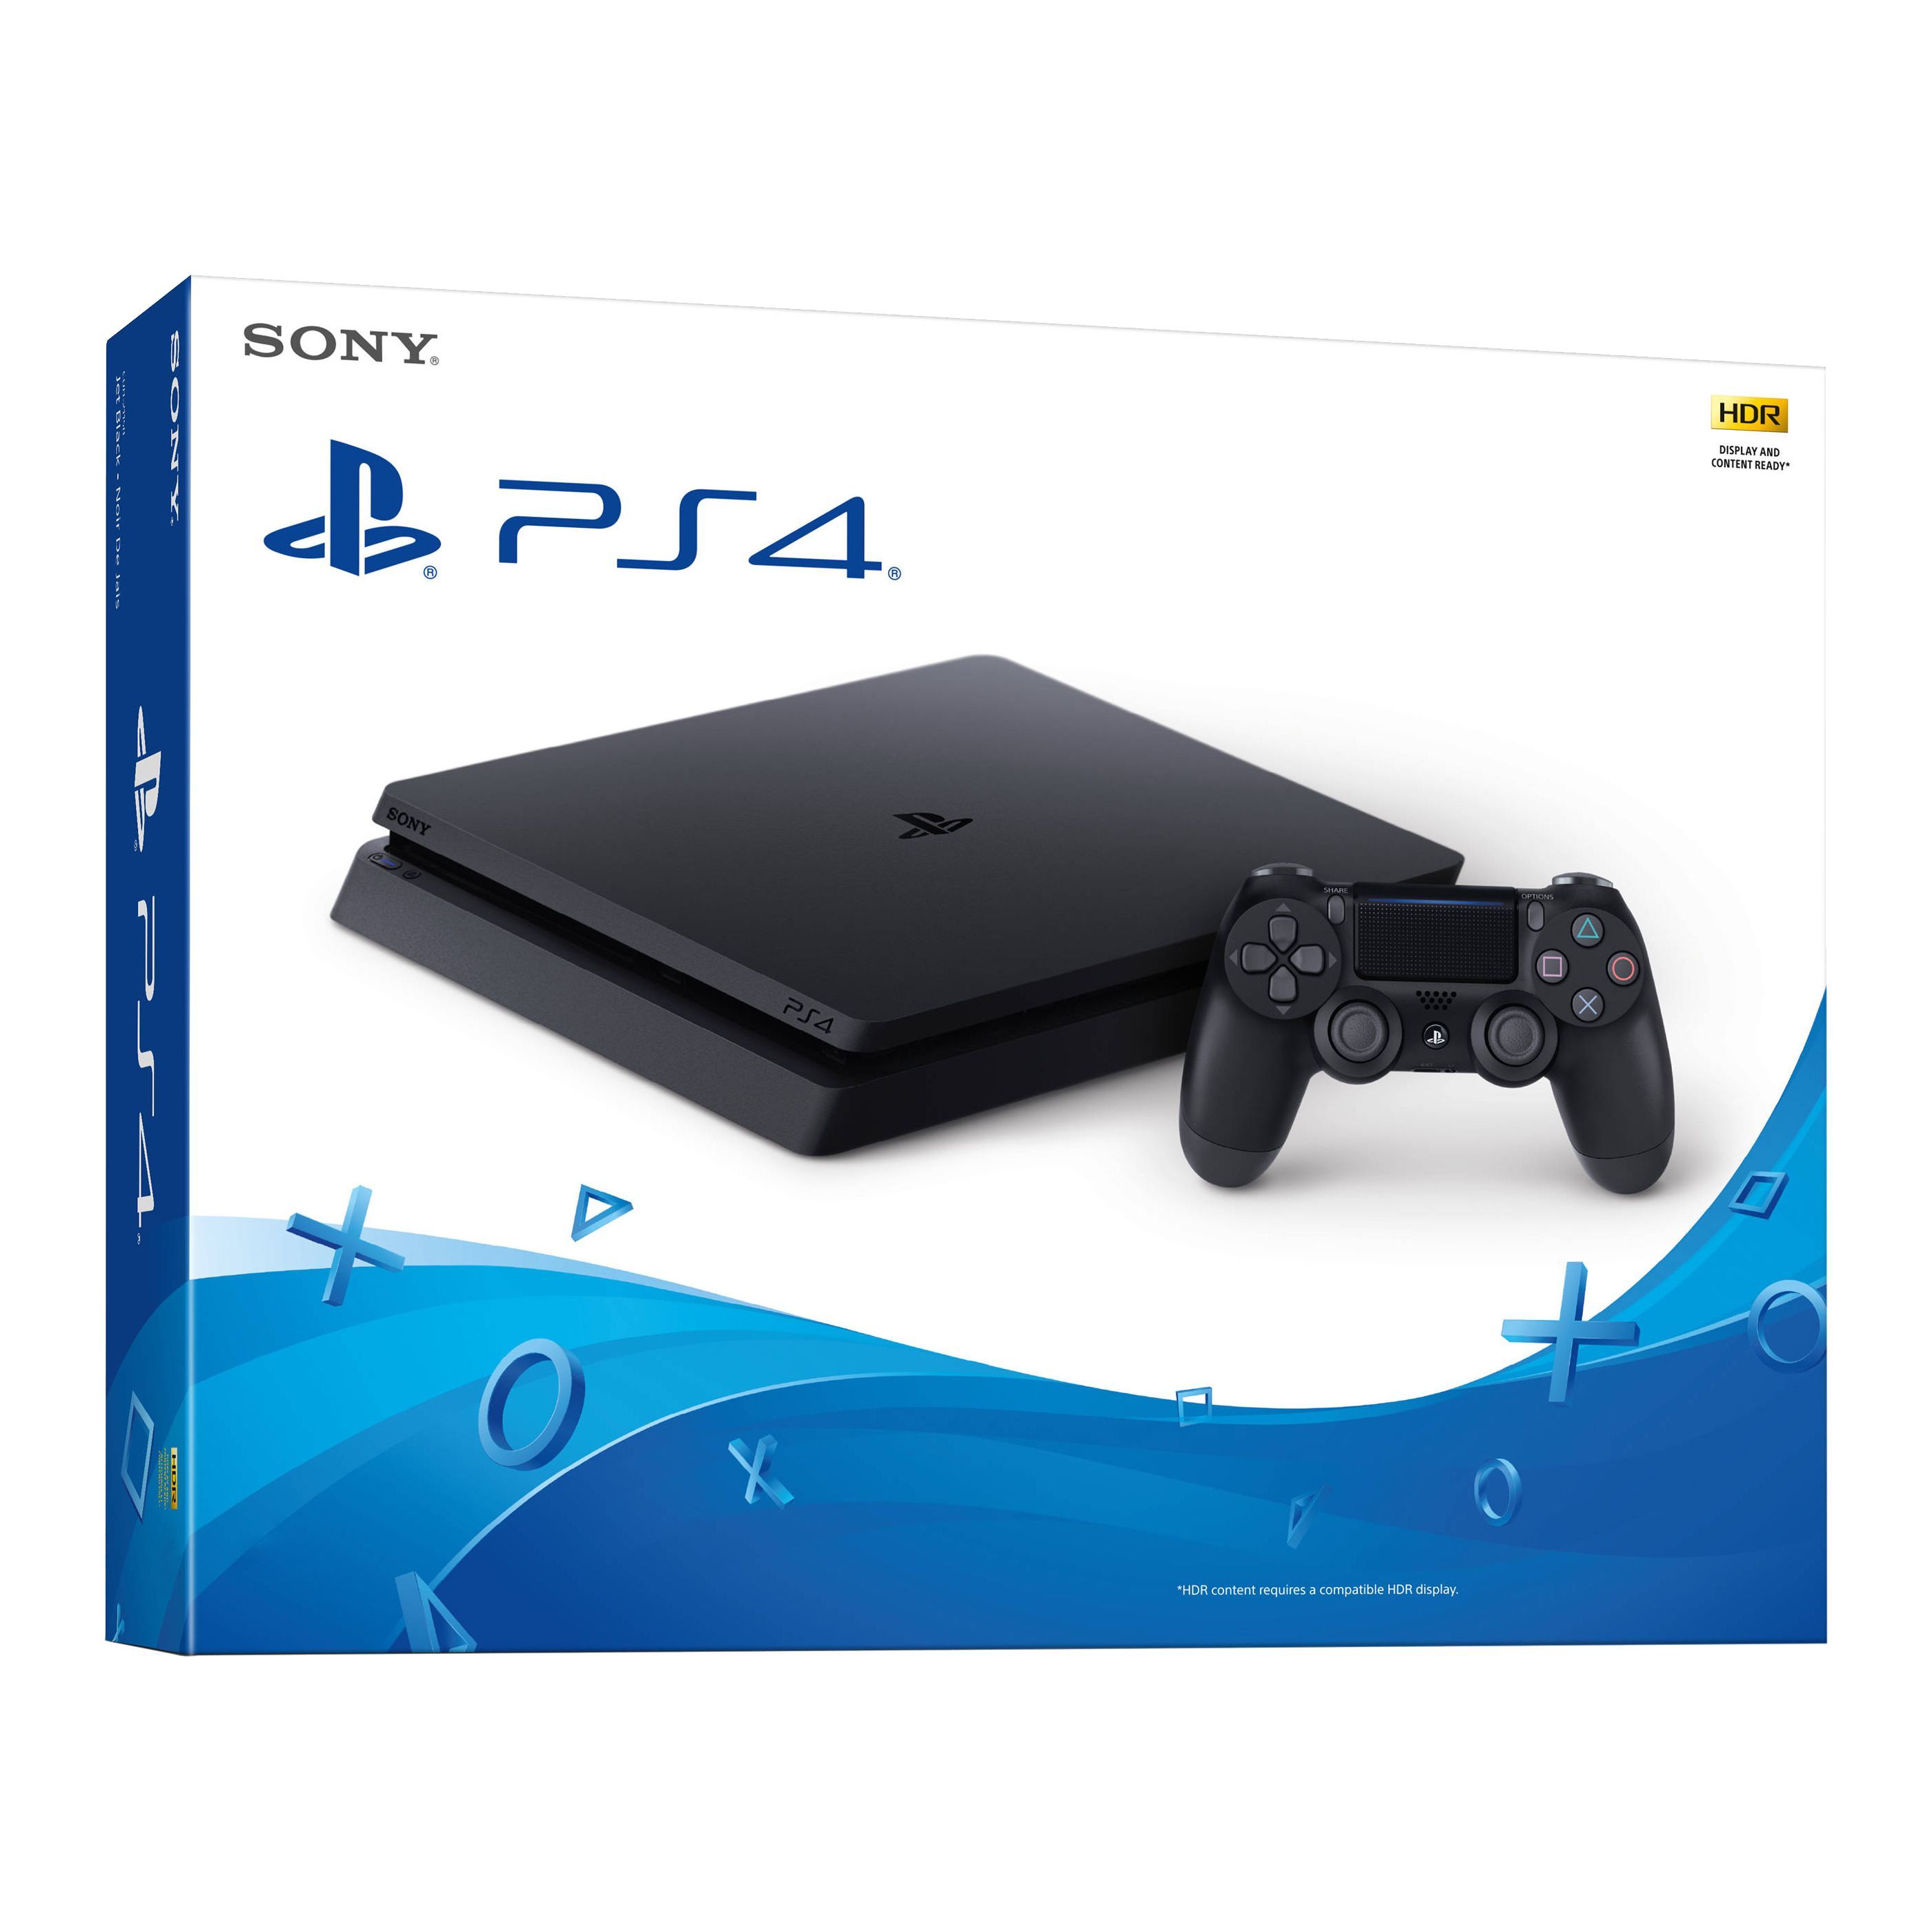 Игровая консоль PlayStation Slim 500GB (Япония CUH-2200A), черный — купить в интернет-магазине с быстрой доставкой